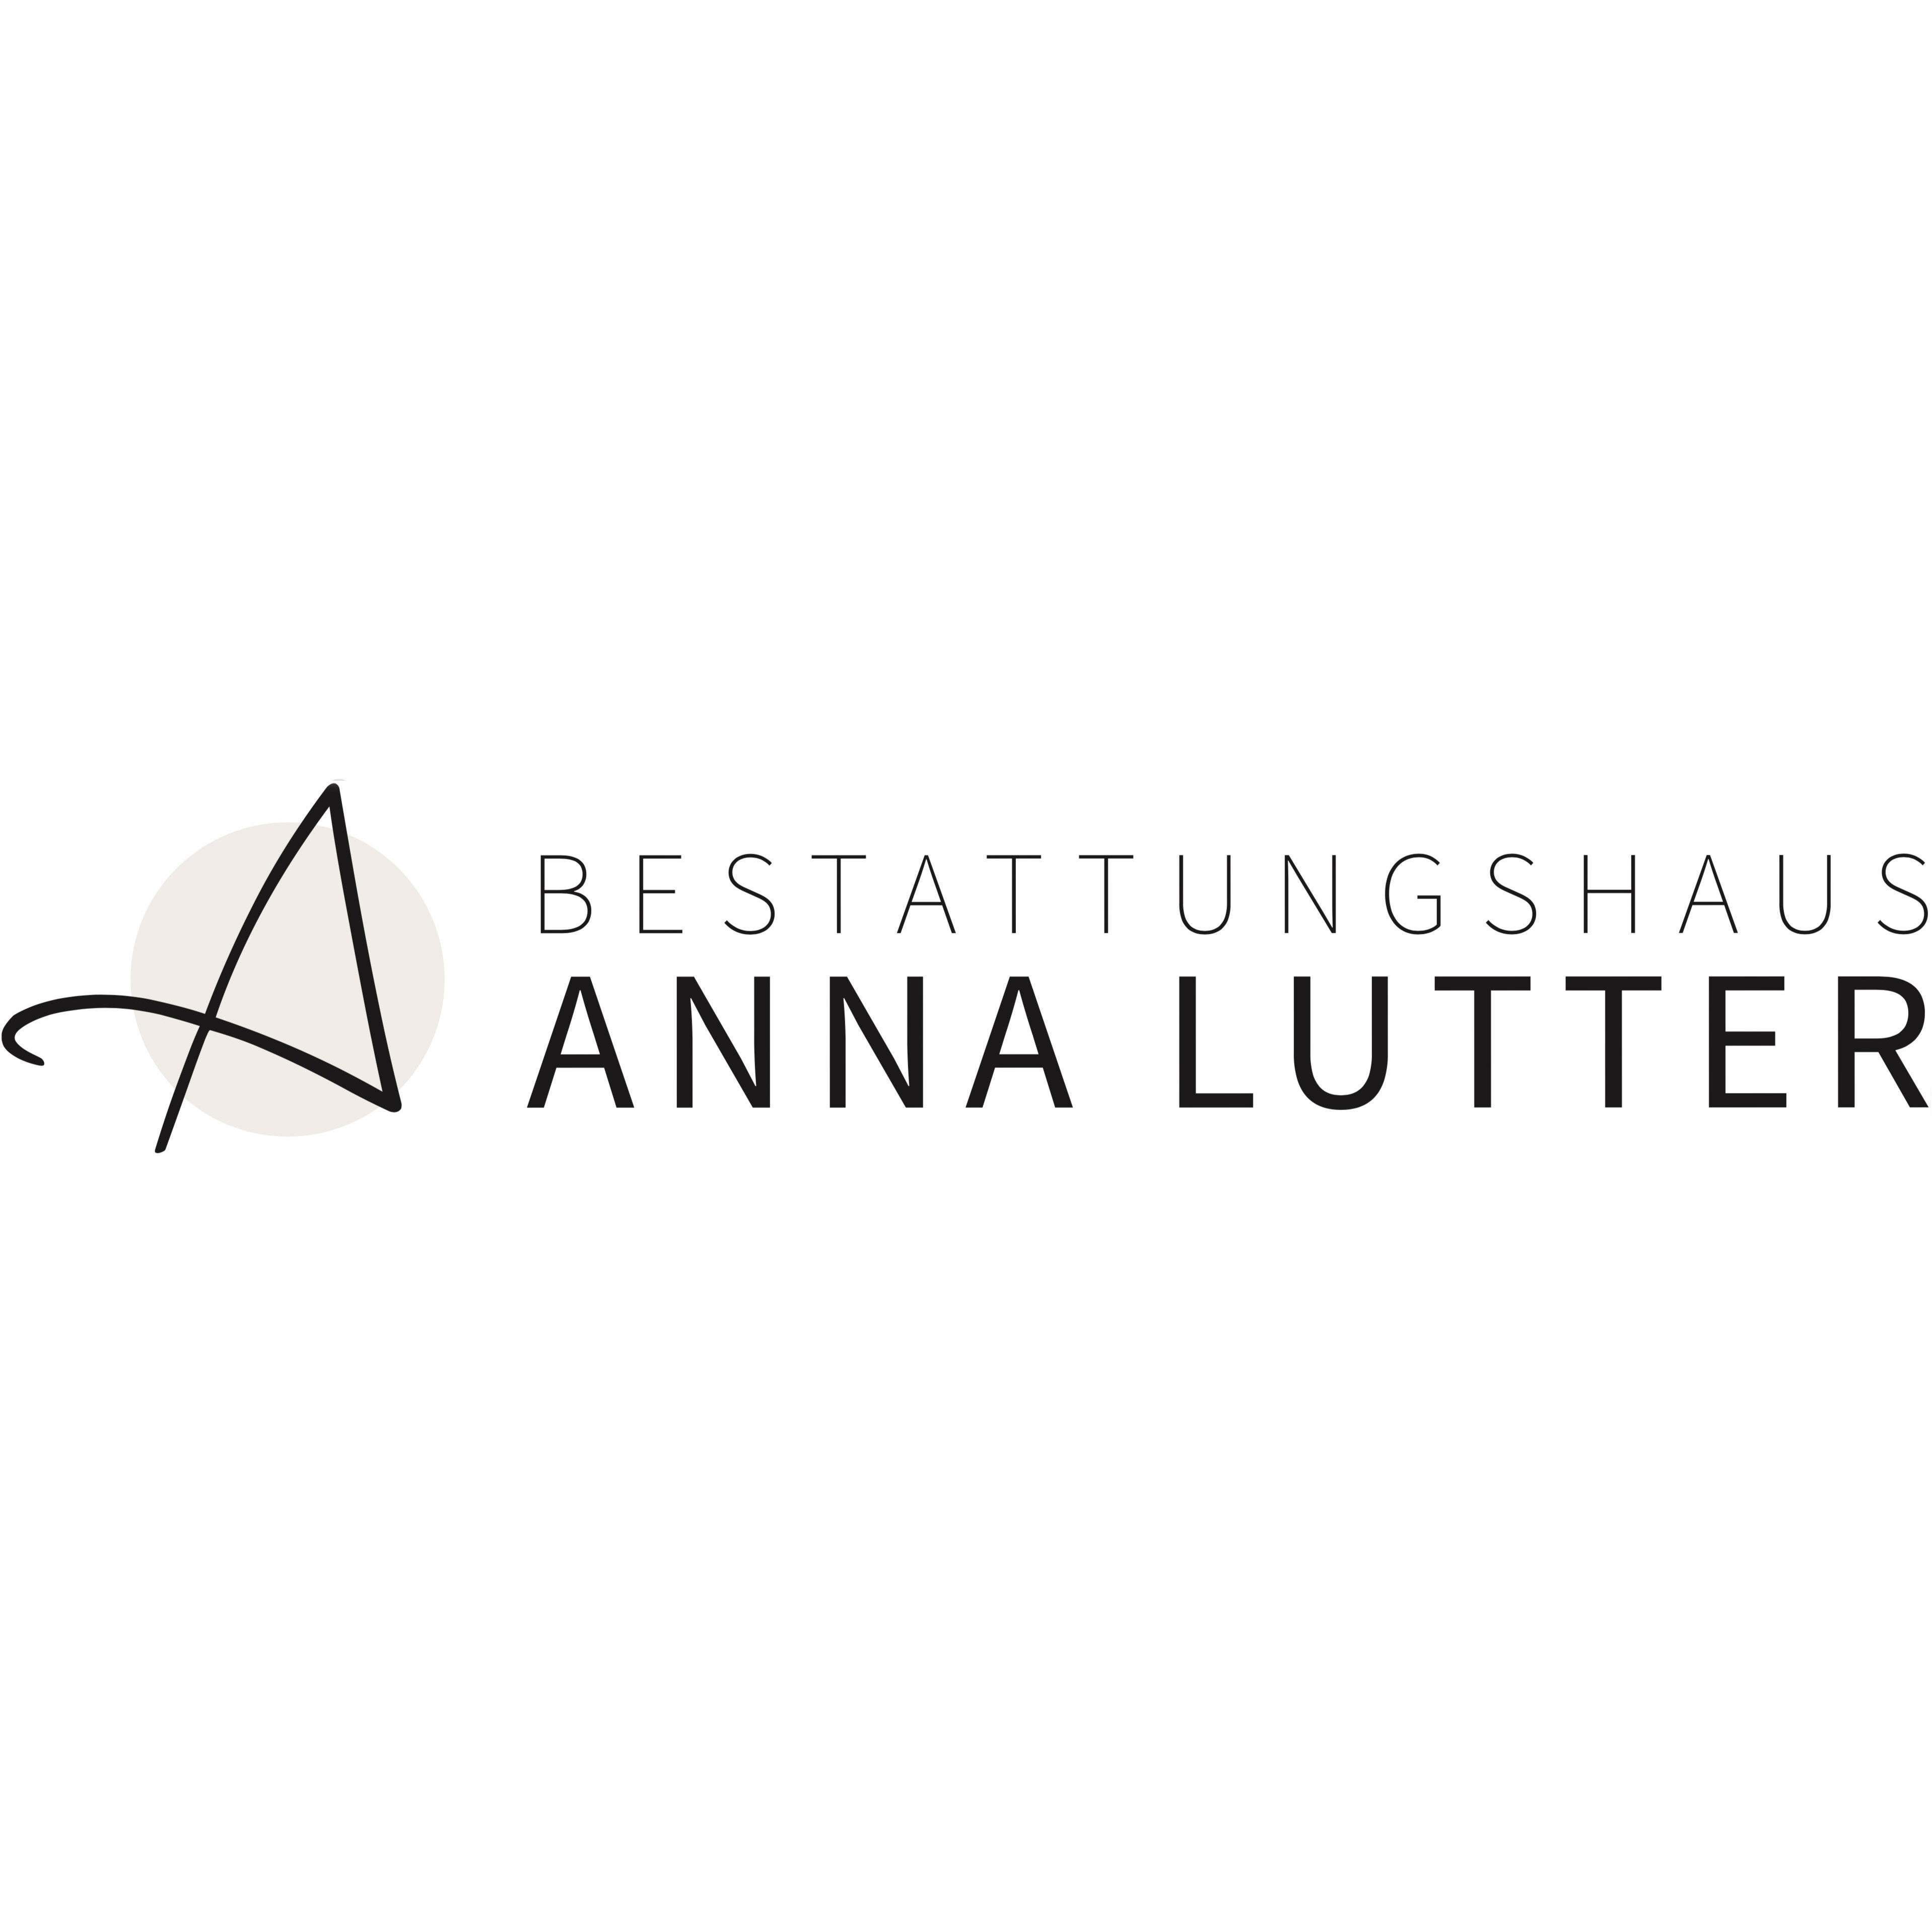 Bestattungshaus Anna Lutter